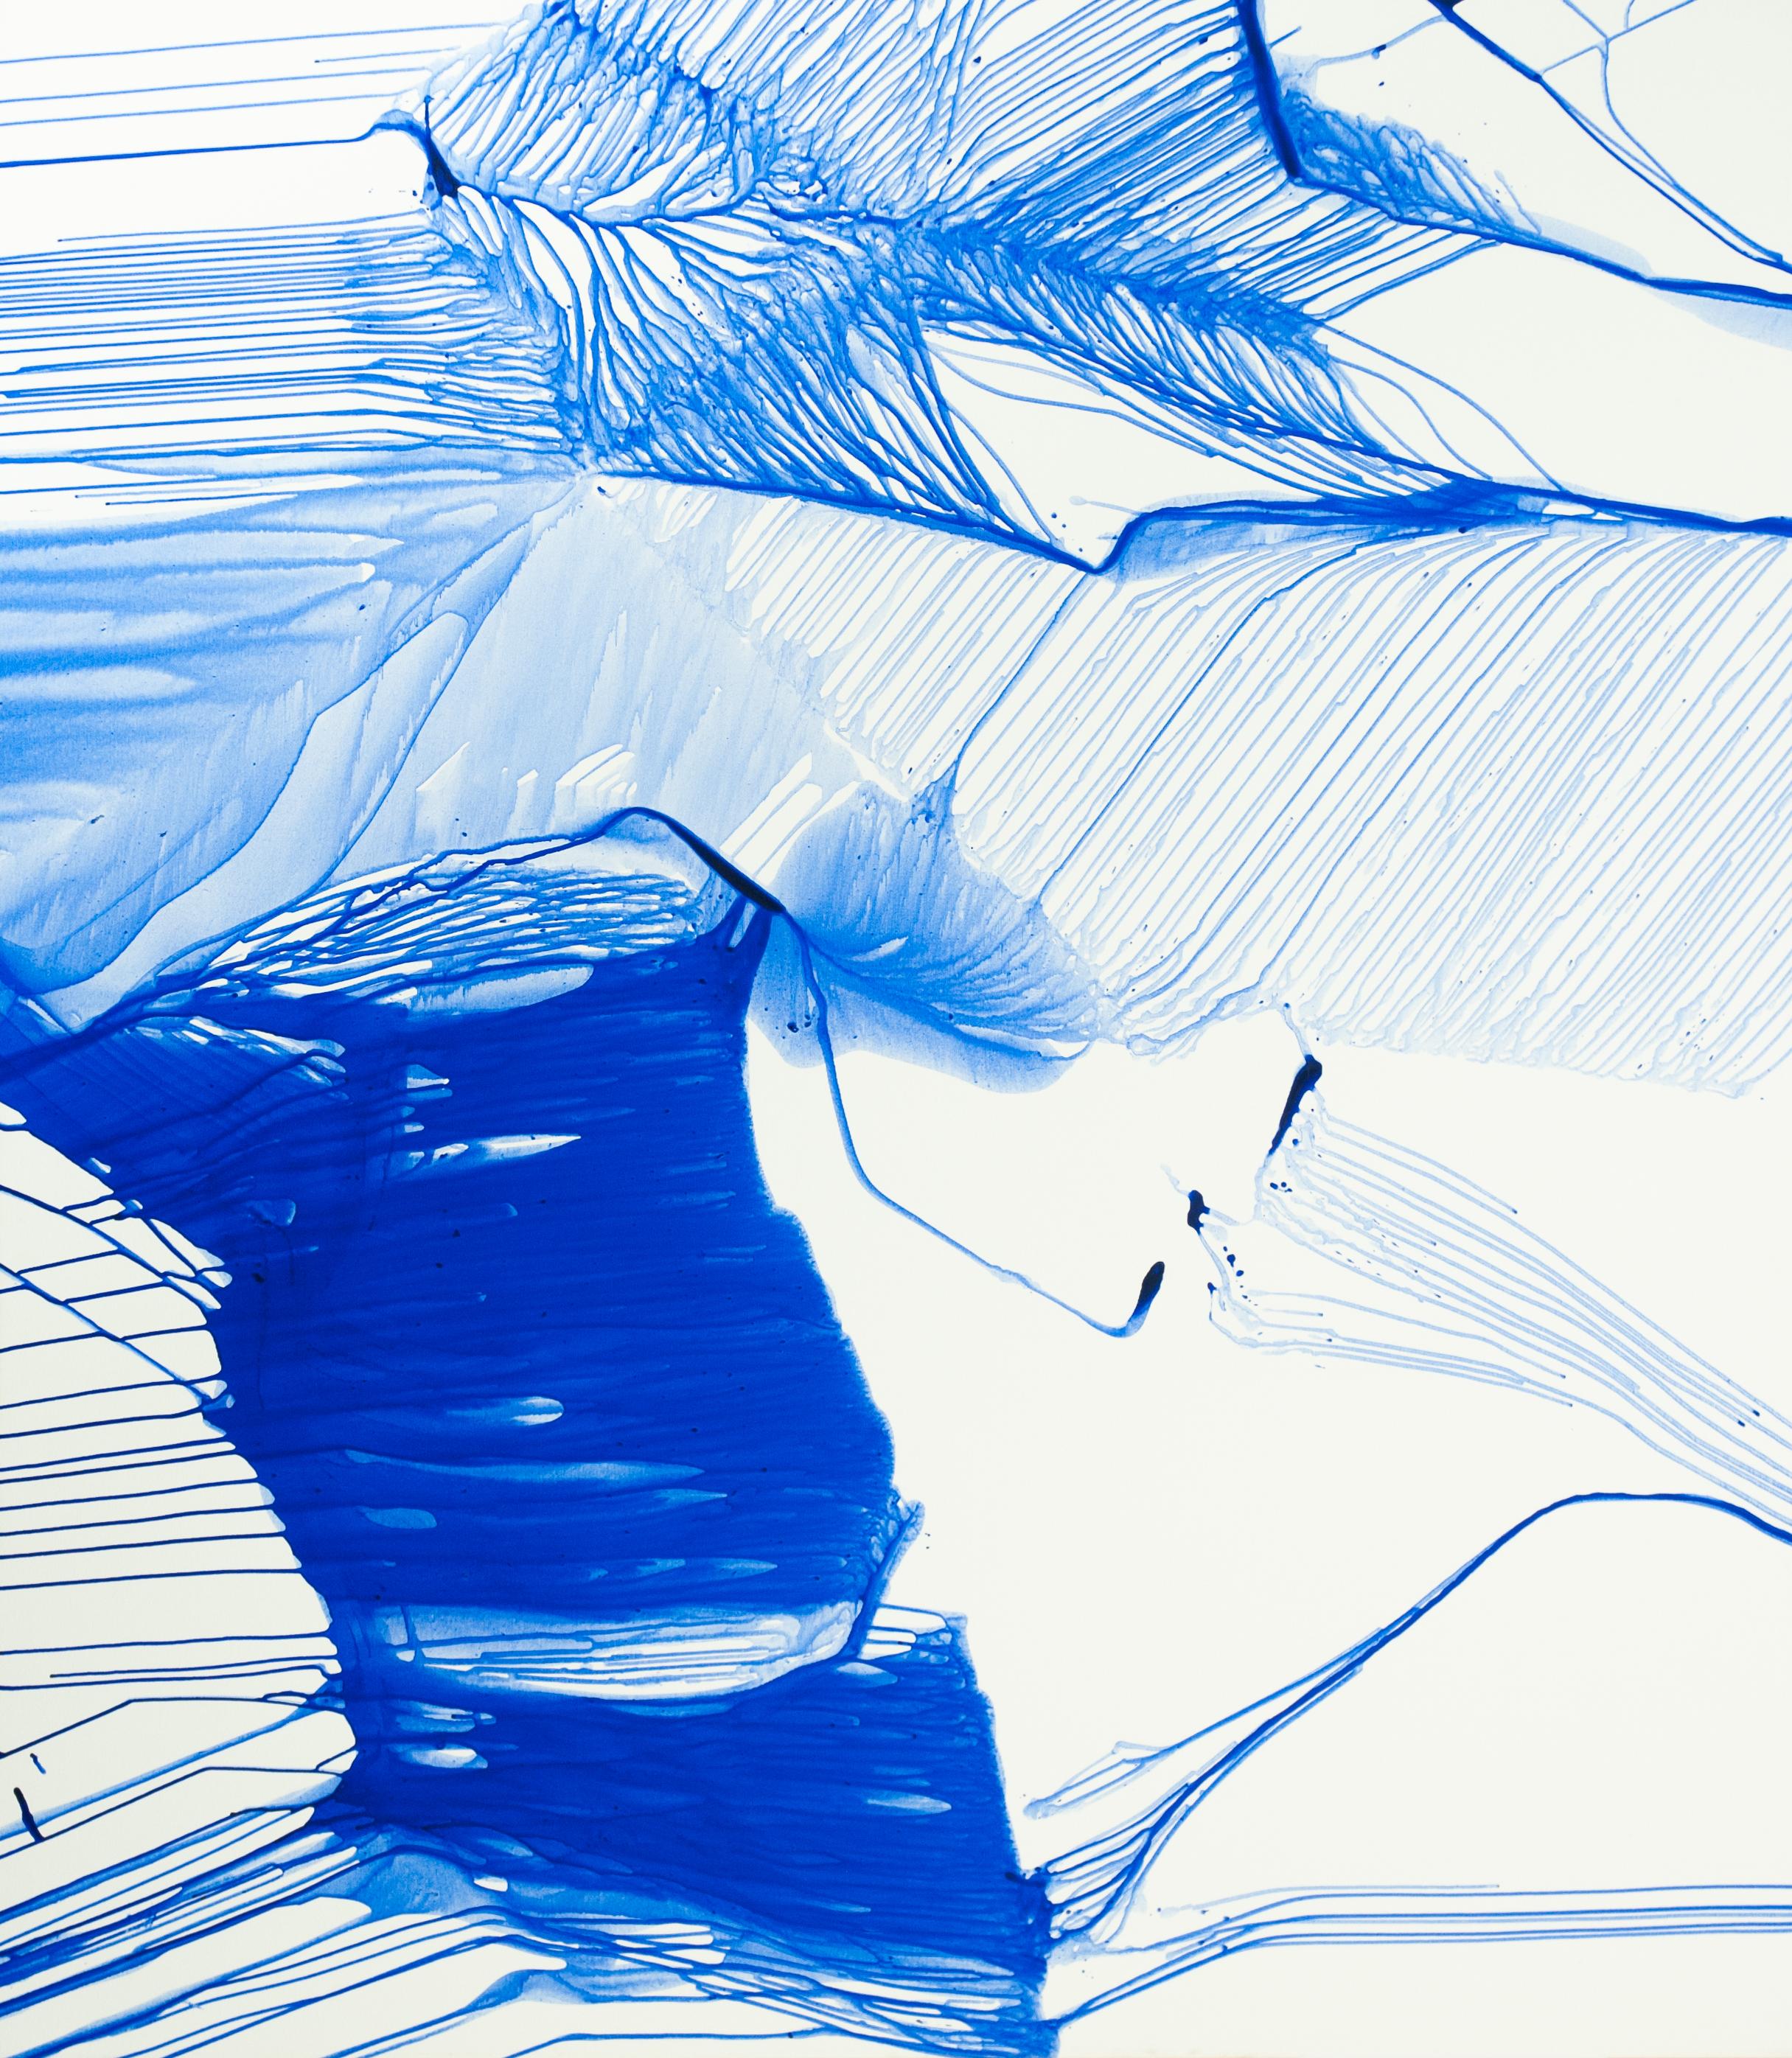 Bluemetrie 11 - Zeitgenössisches Blau, Weiß - Abstrakte XL Malerei, Konzeptuelle Kunst